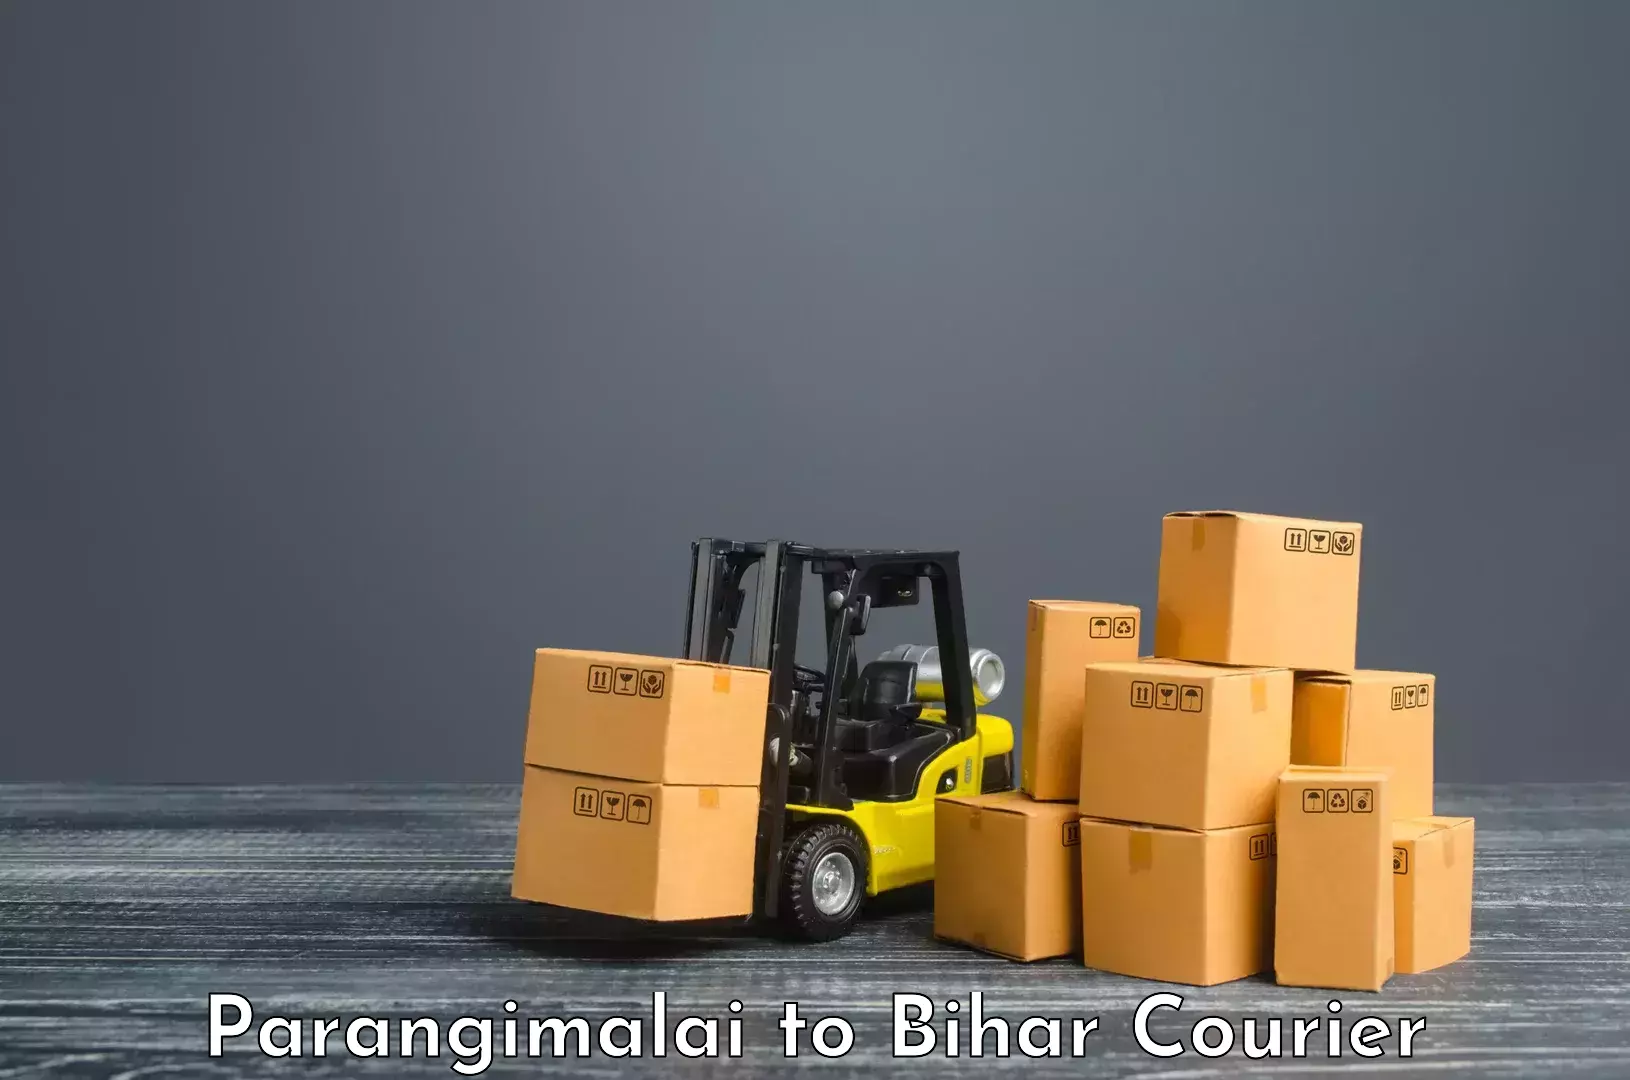 Next-day freight services Parangimalai to Bihta